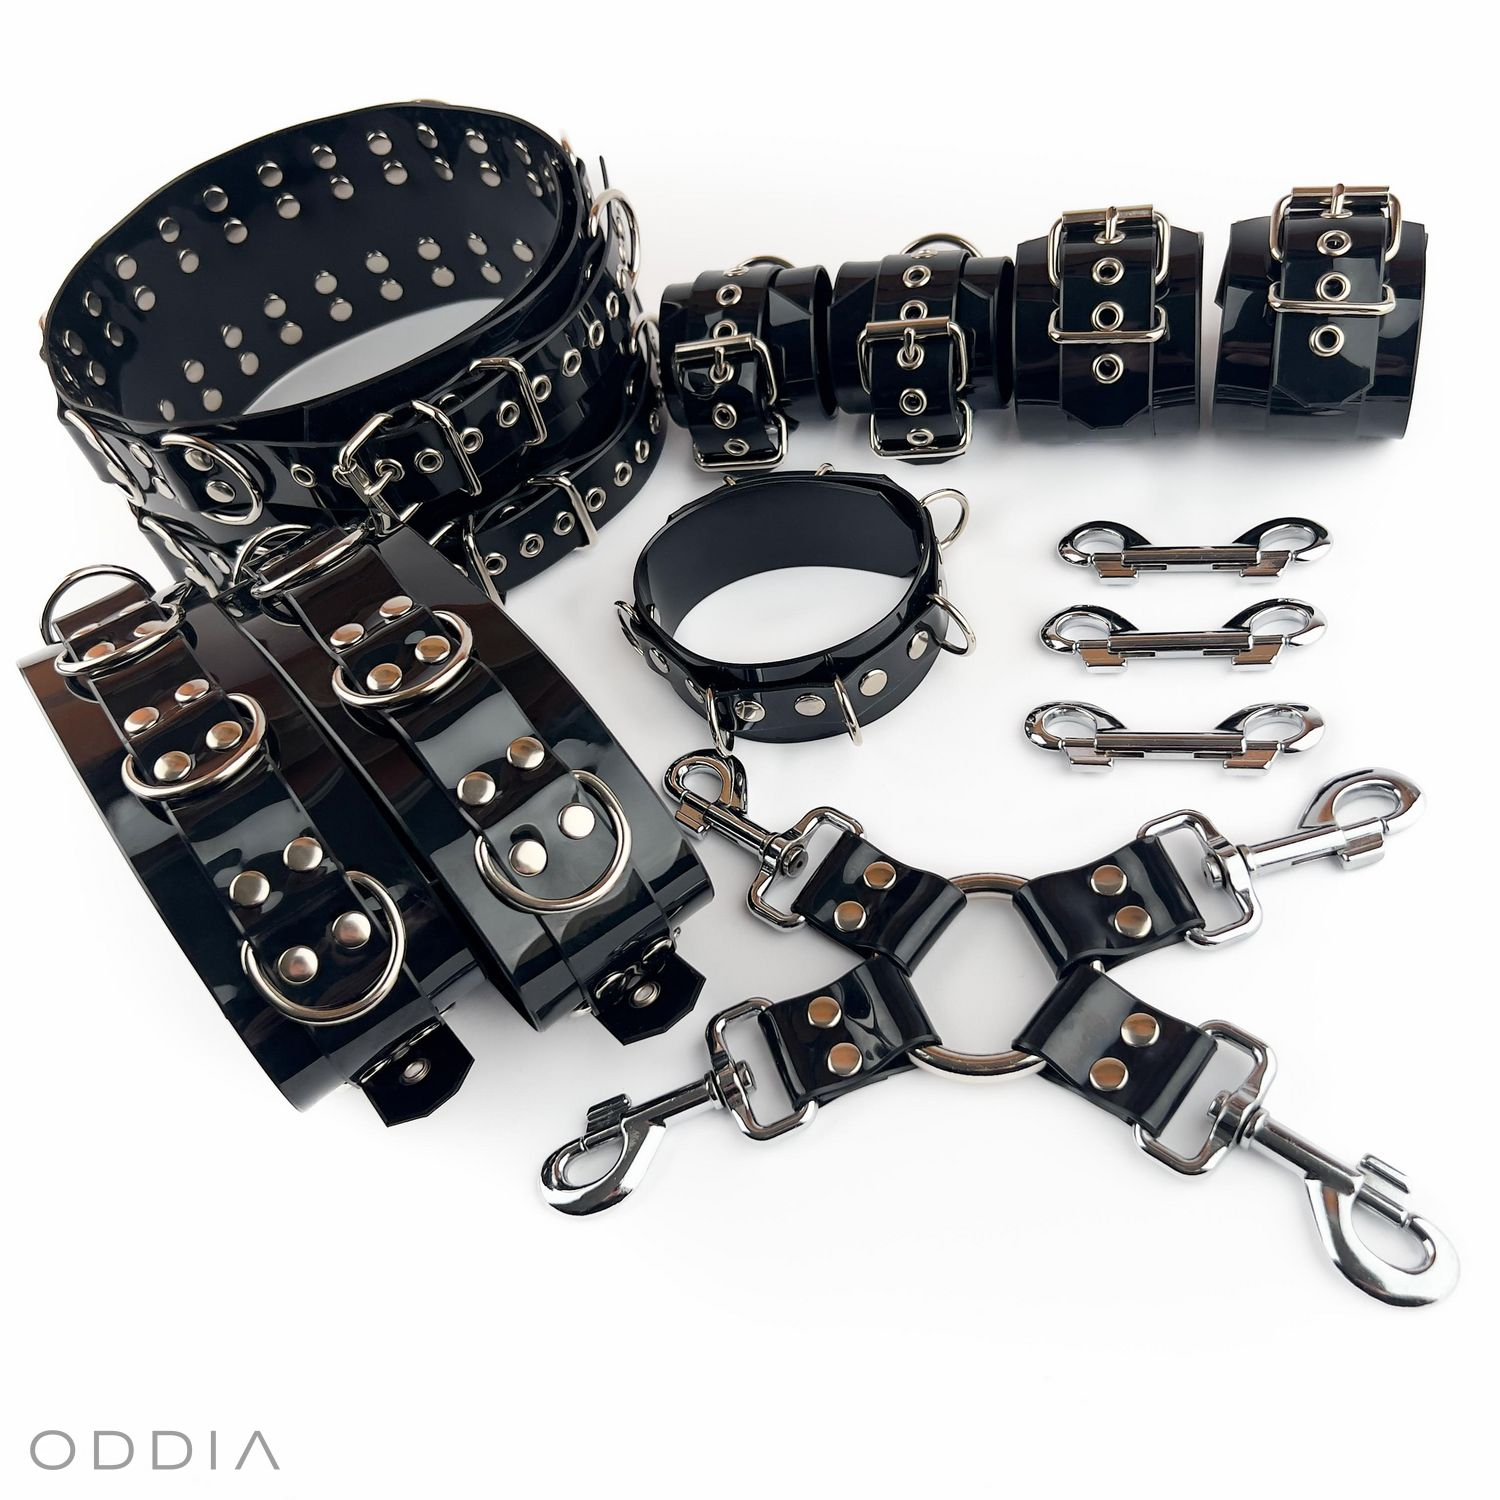 Grand ensemble de bondage avec différentes contraintes BDSM, collier, ruban de bondage et accessoires, en noir sur fond blanc